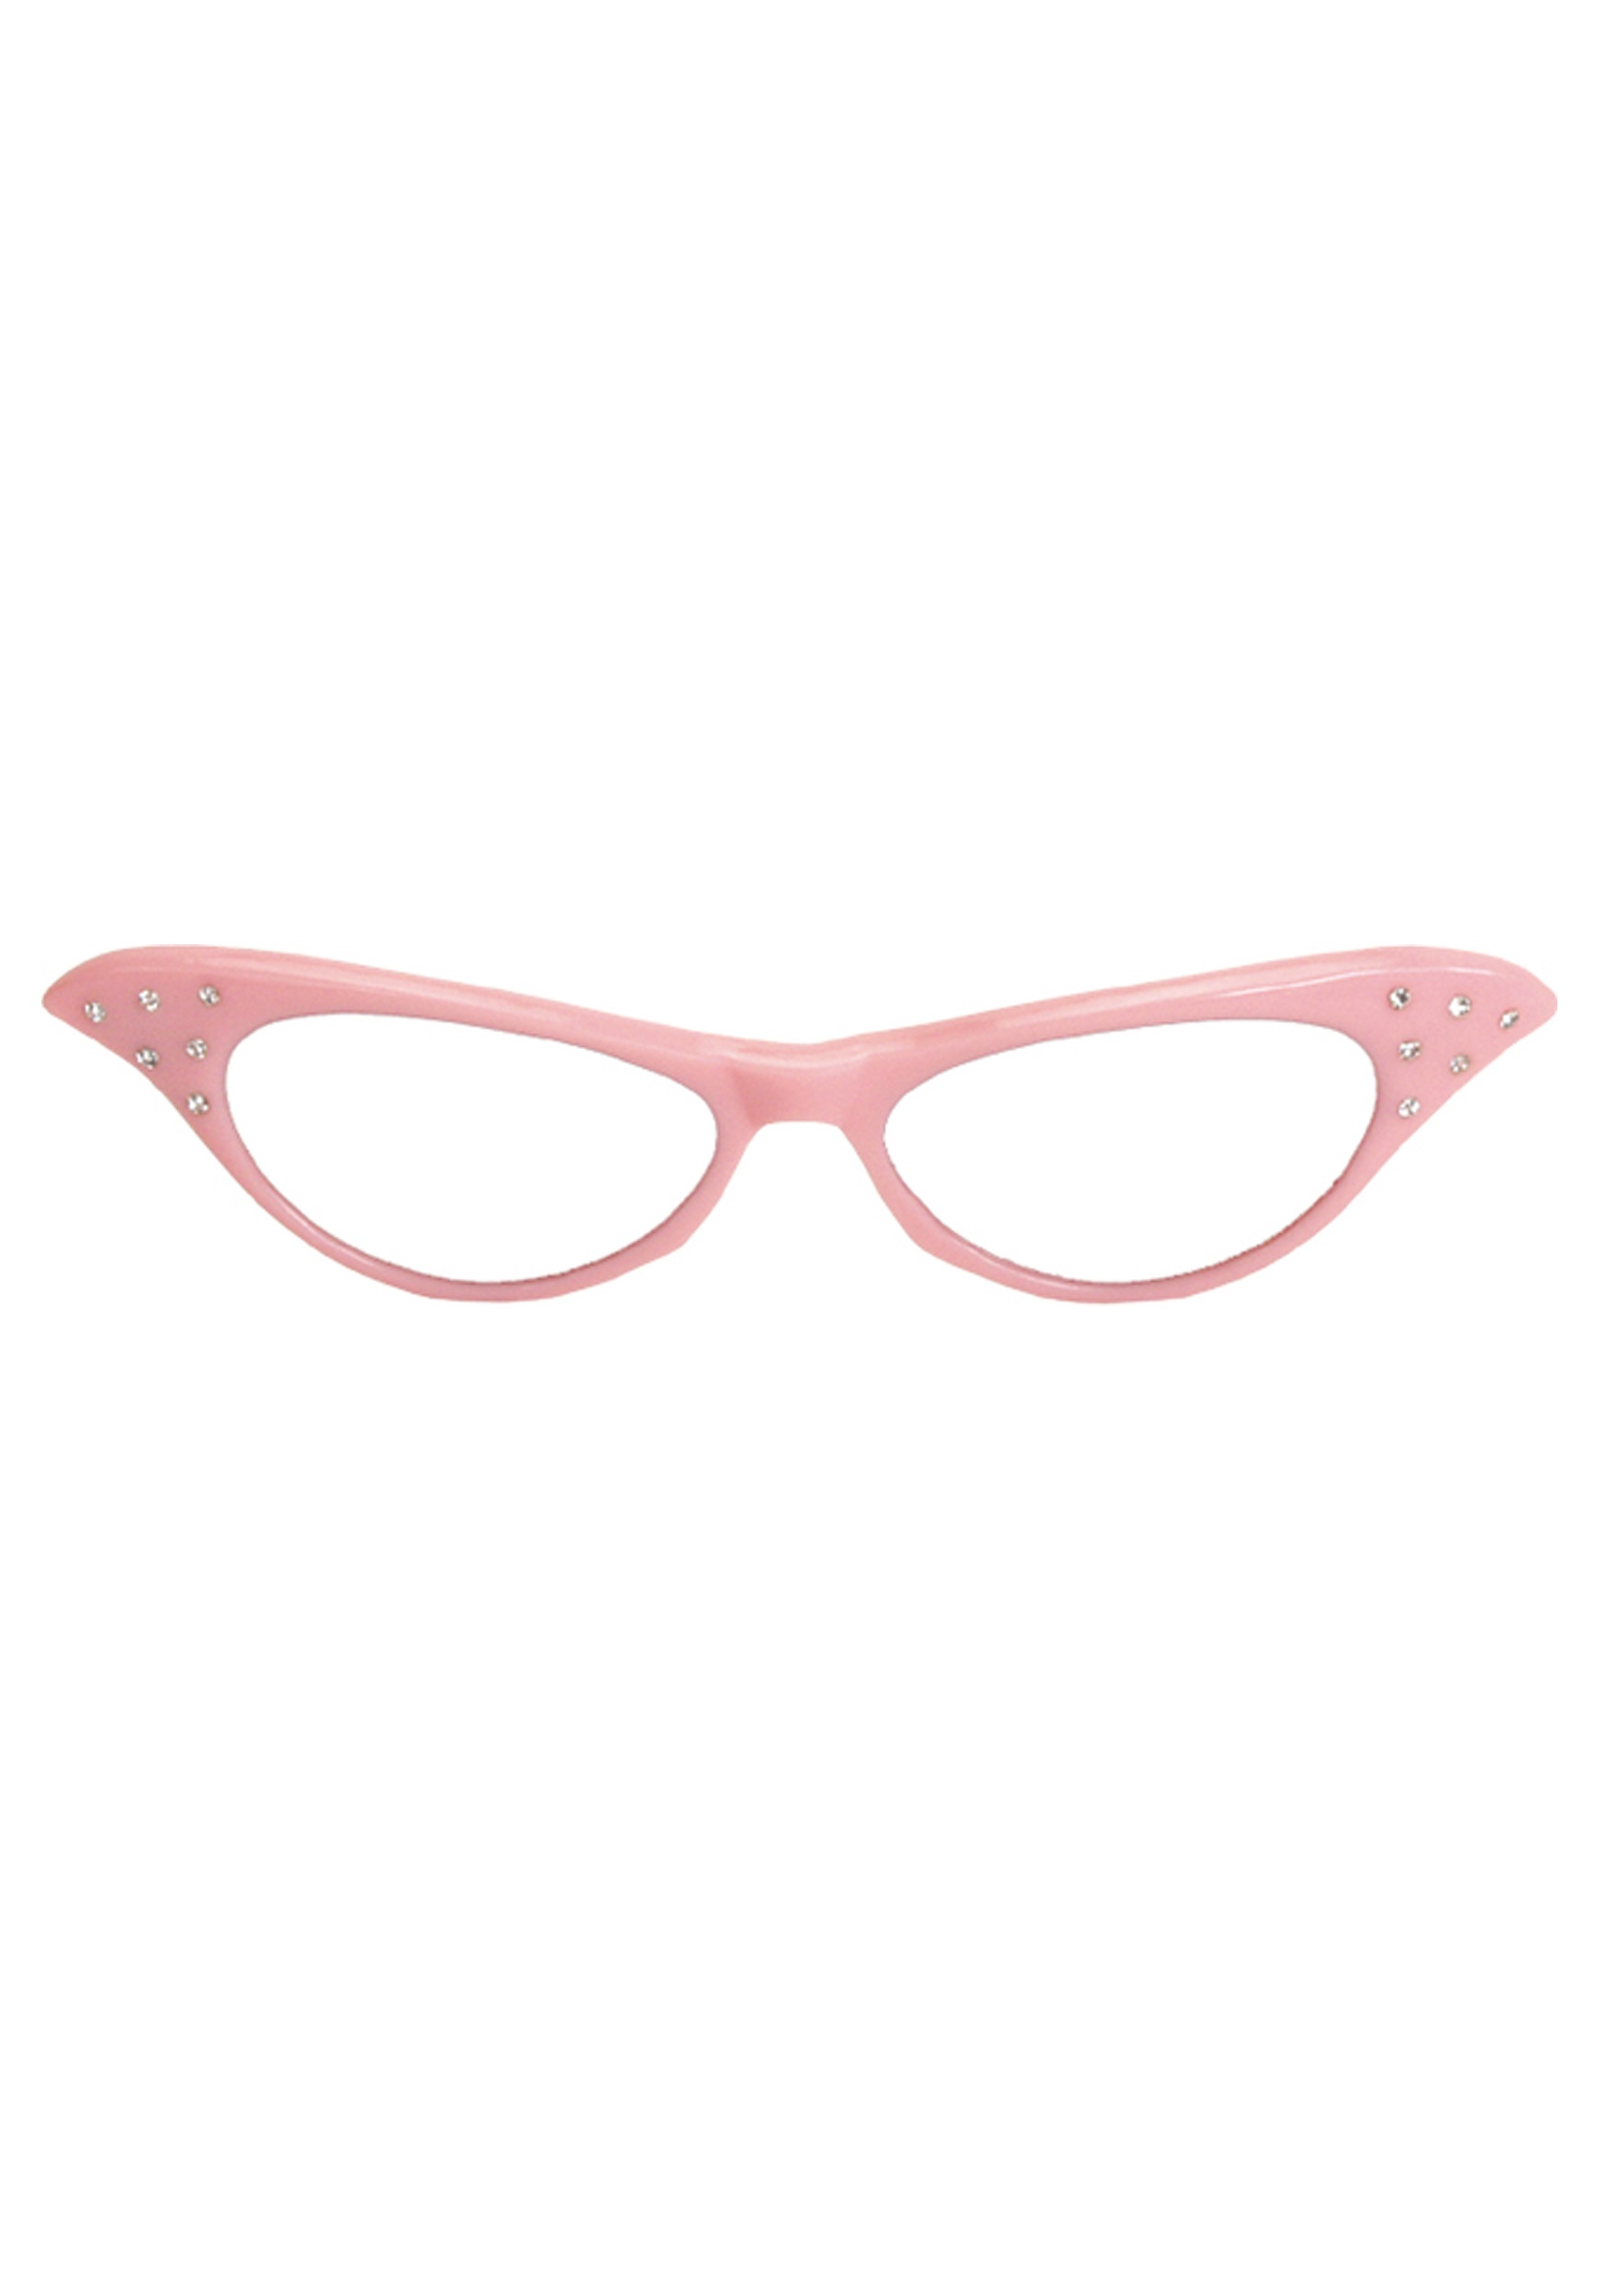 Без розовых очков. Розовые очки. Очки розоватые. Очки розовые прозрачные. Детские розовые очки.